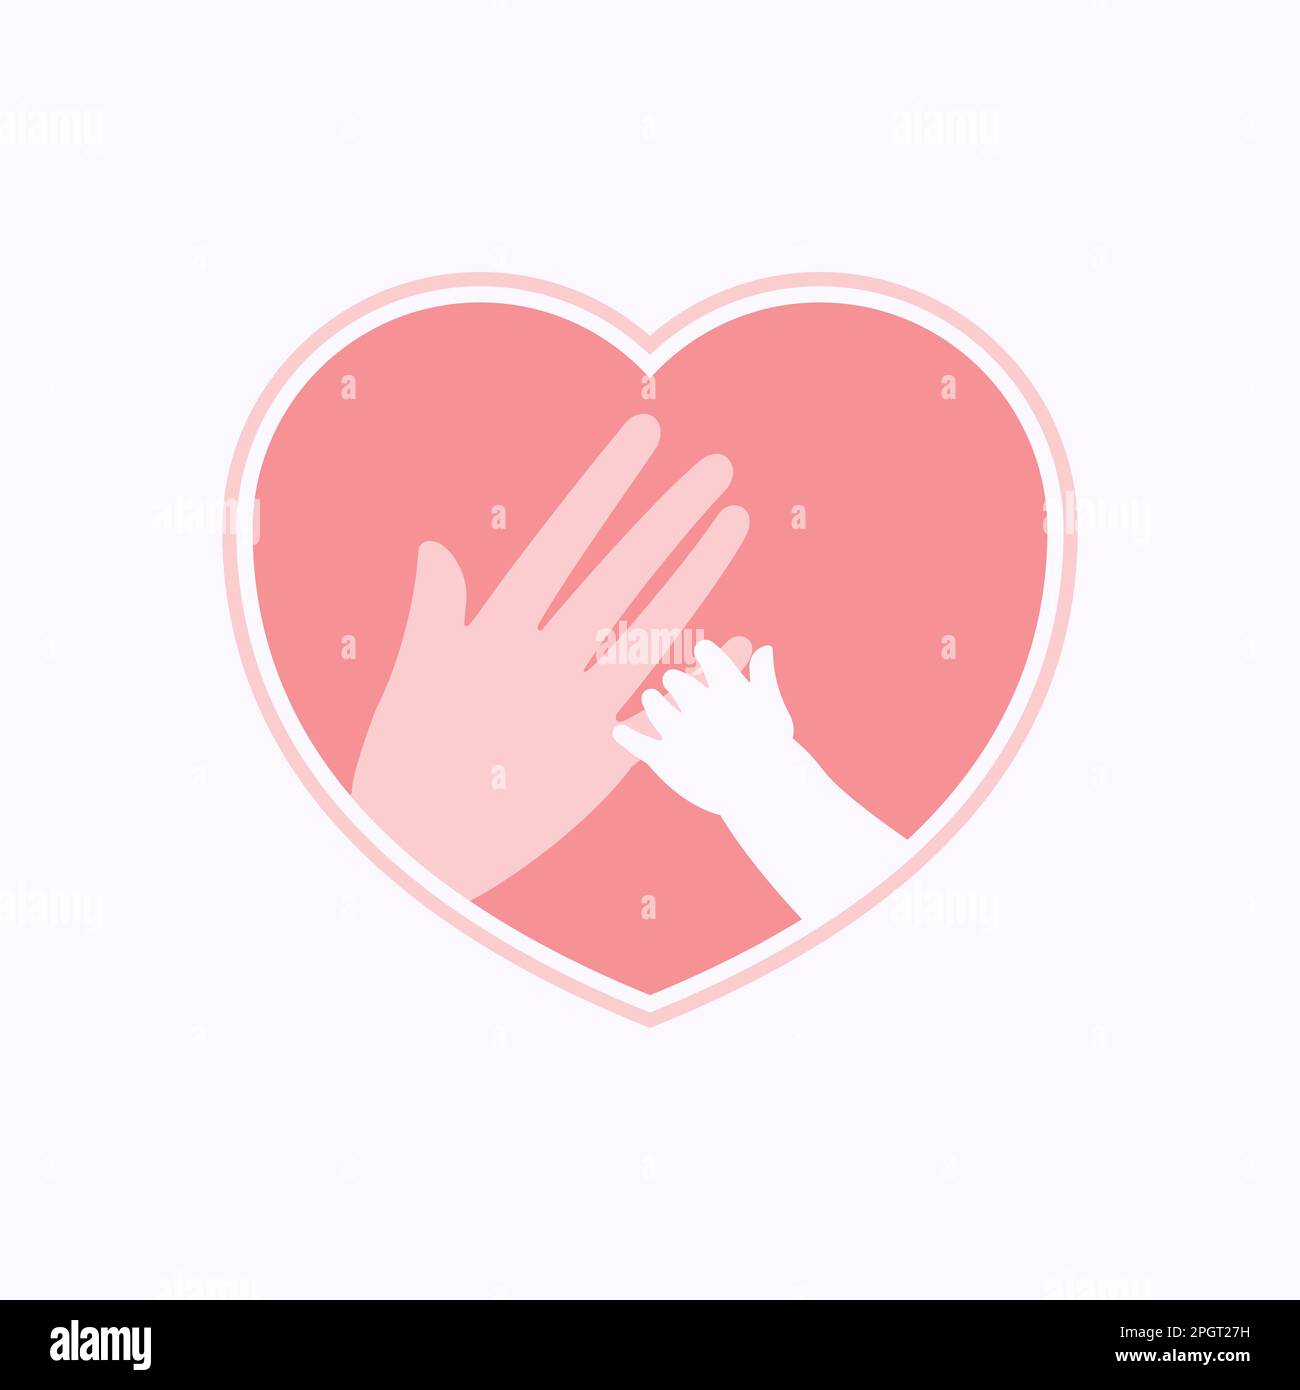 La piccola mano che tiene il dito della mano grande rappresenta la madre ed il bambino, nella silhouette della cornice a forma di cuore rosa Illustrazione Vettoriale